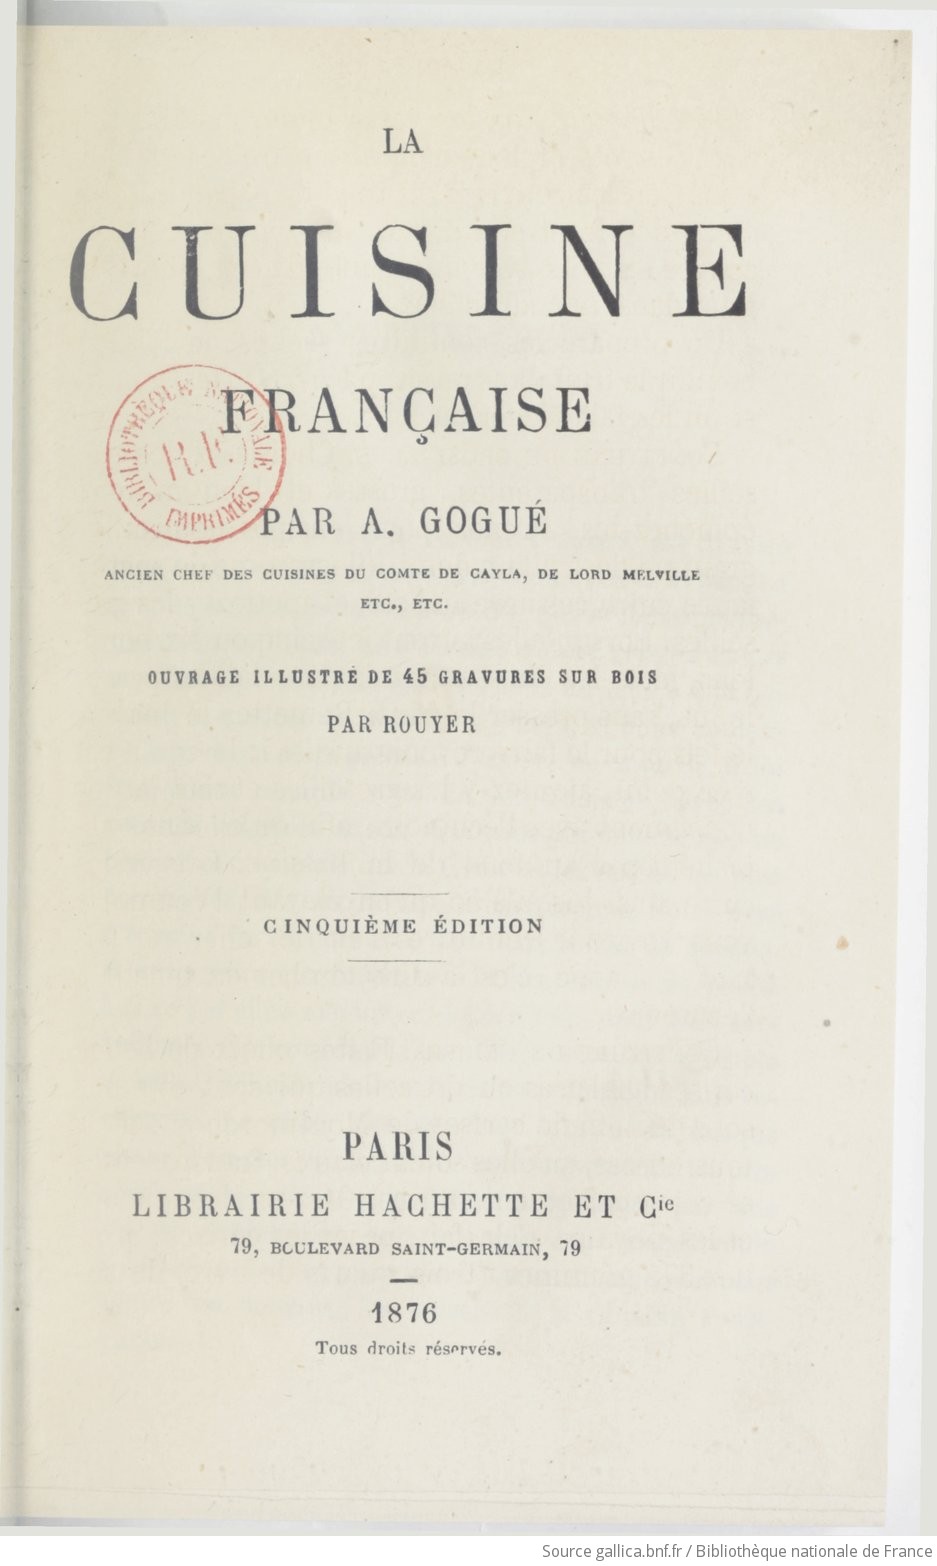 La cuisine française (5e édition) / par A. Gogué, ; ouvrage